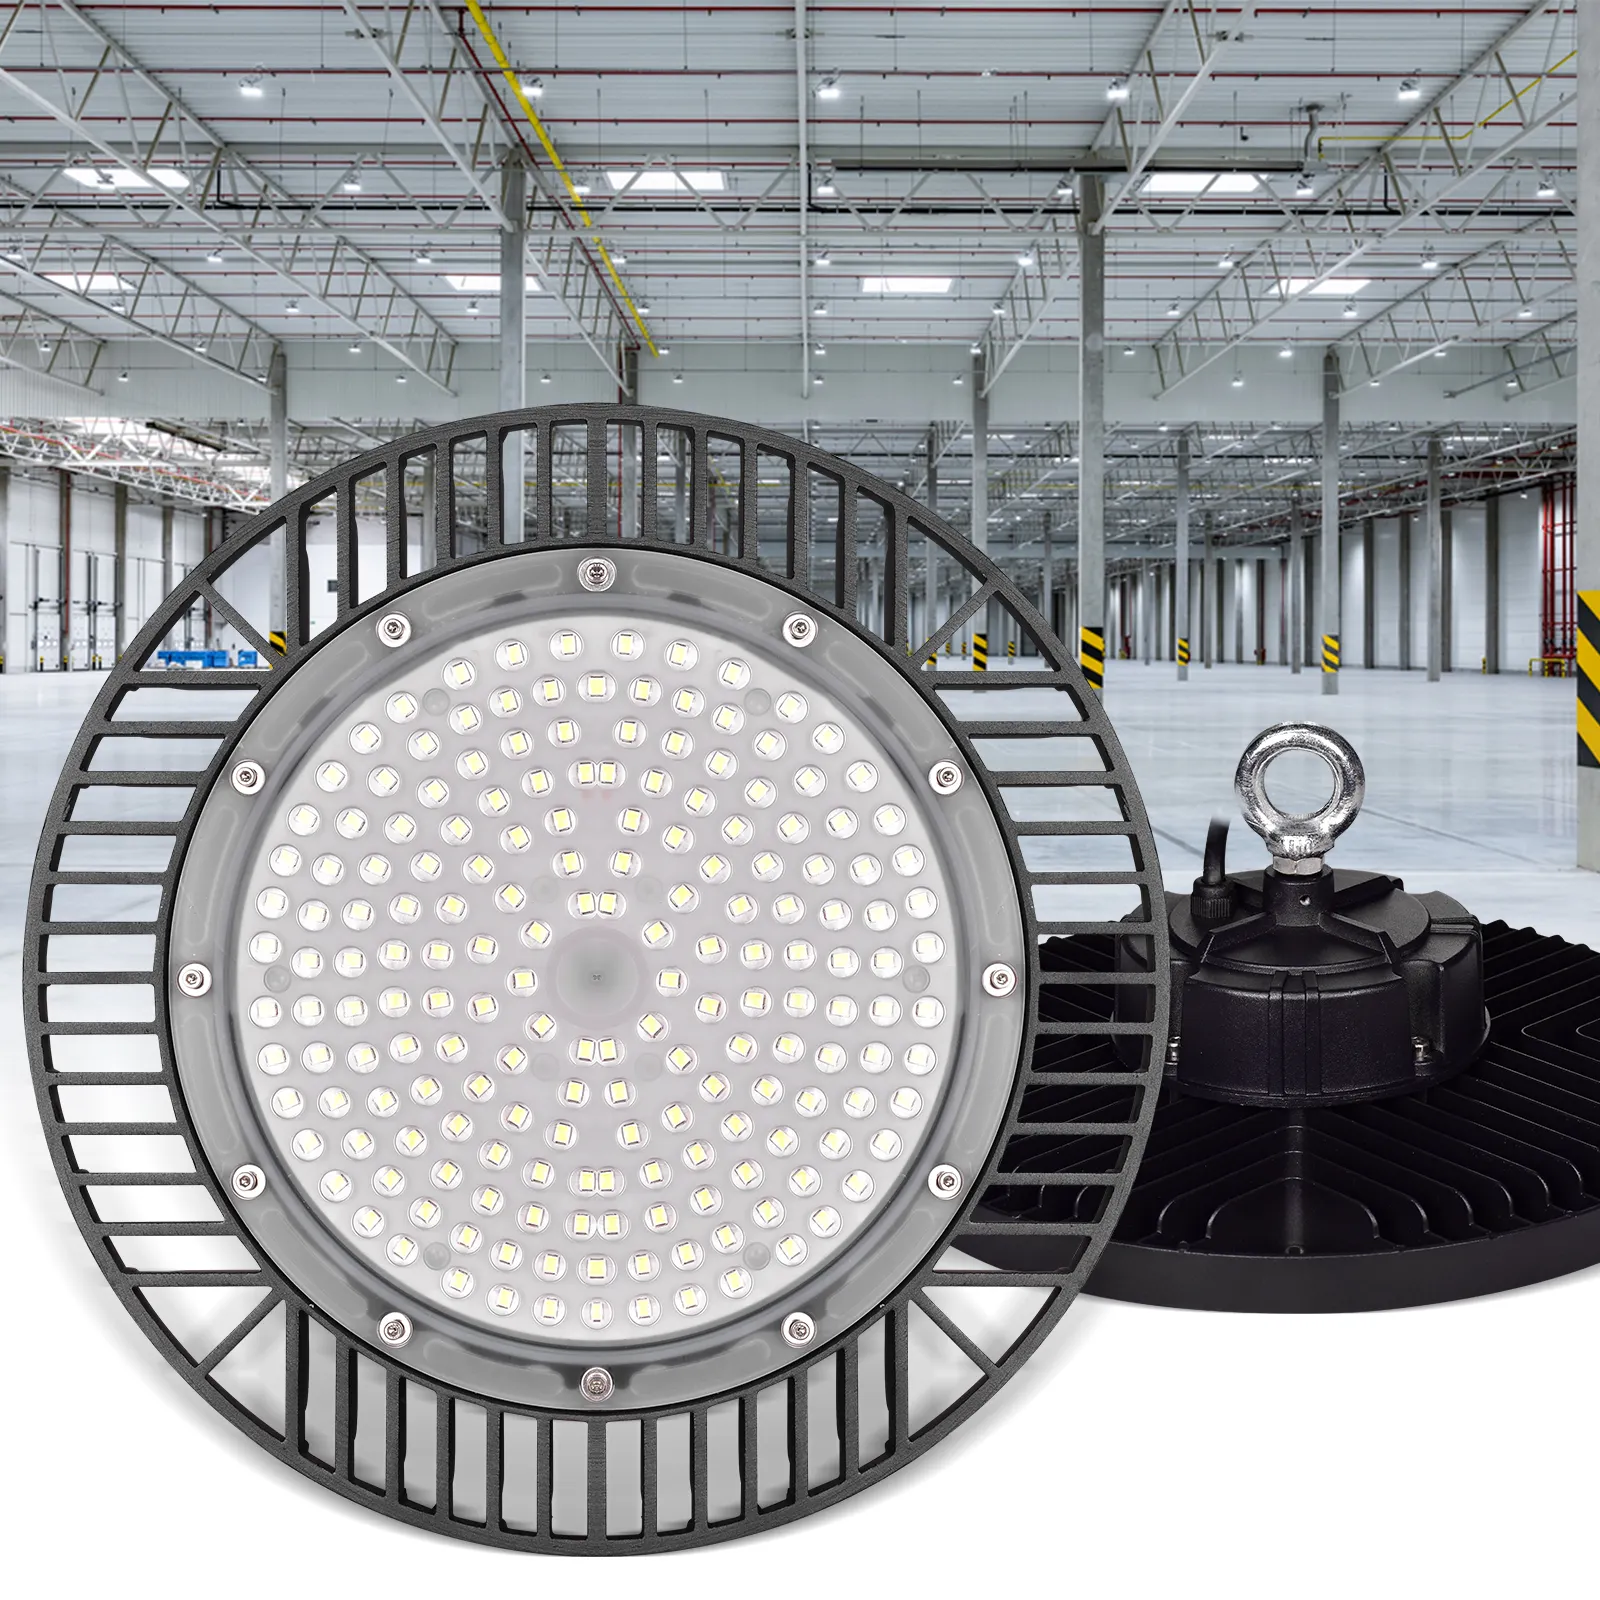 Kommerzielle industrielle Beleuchtung 100 W 150 W 200 W IP65 Rund-UFO Led Hochbuchtenlicht Warenlager Werkstatt Hochbuchtenlampe